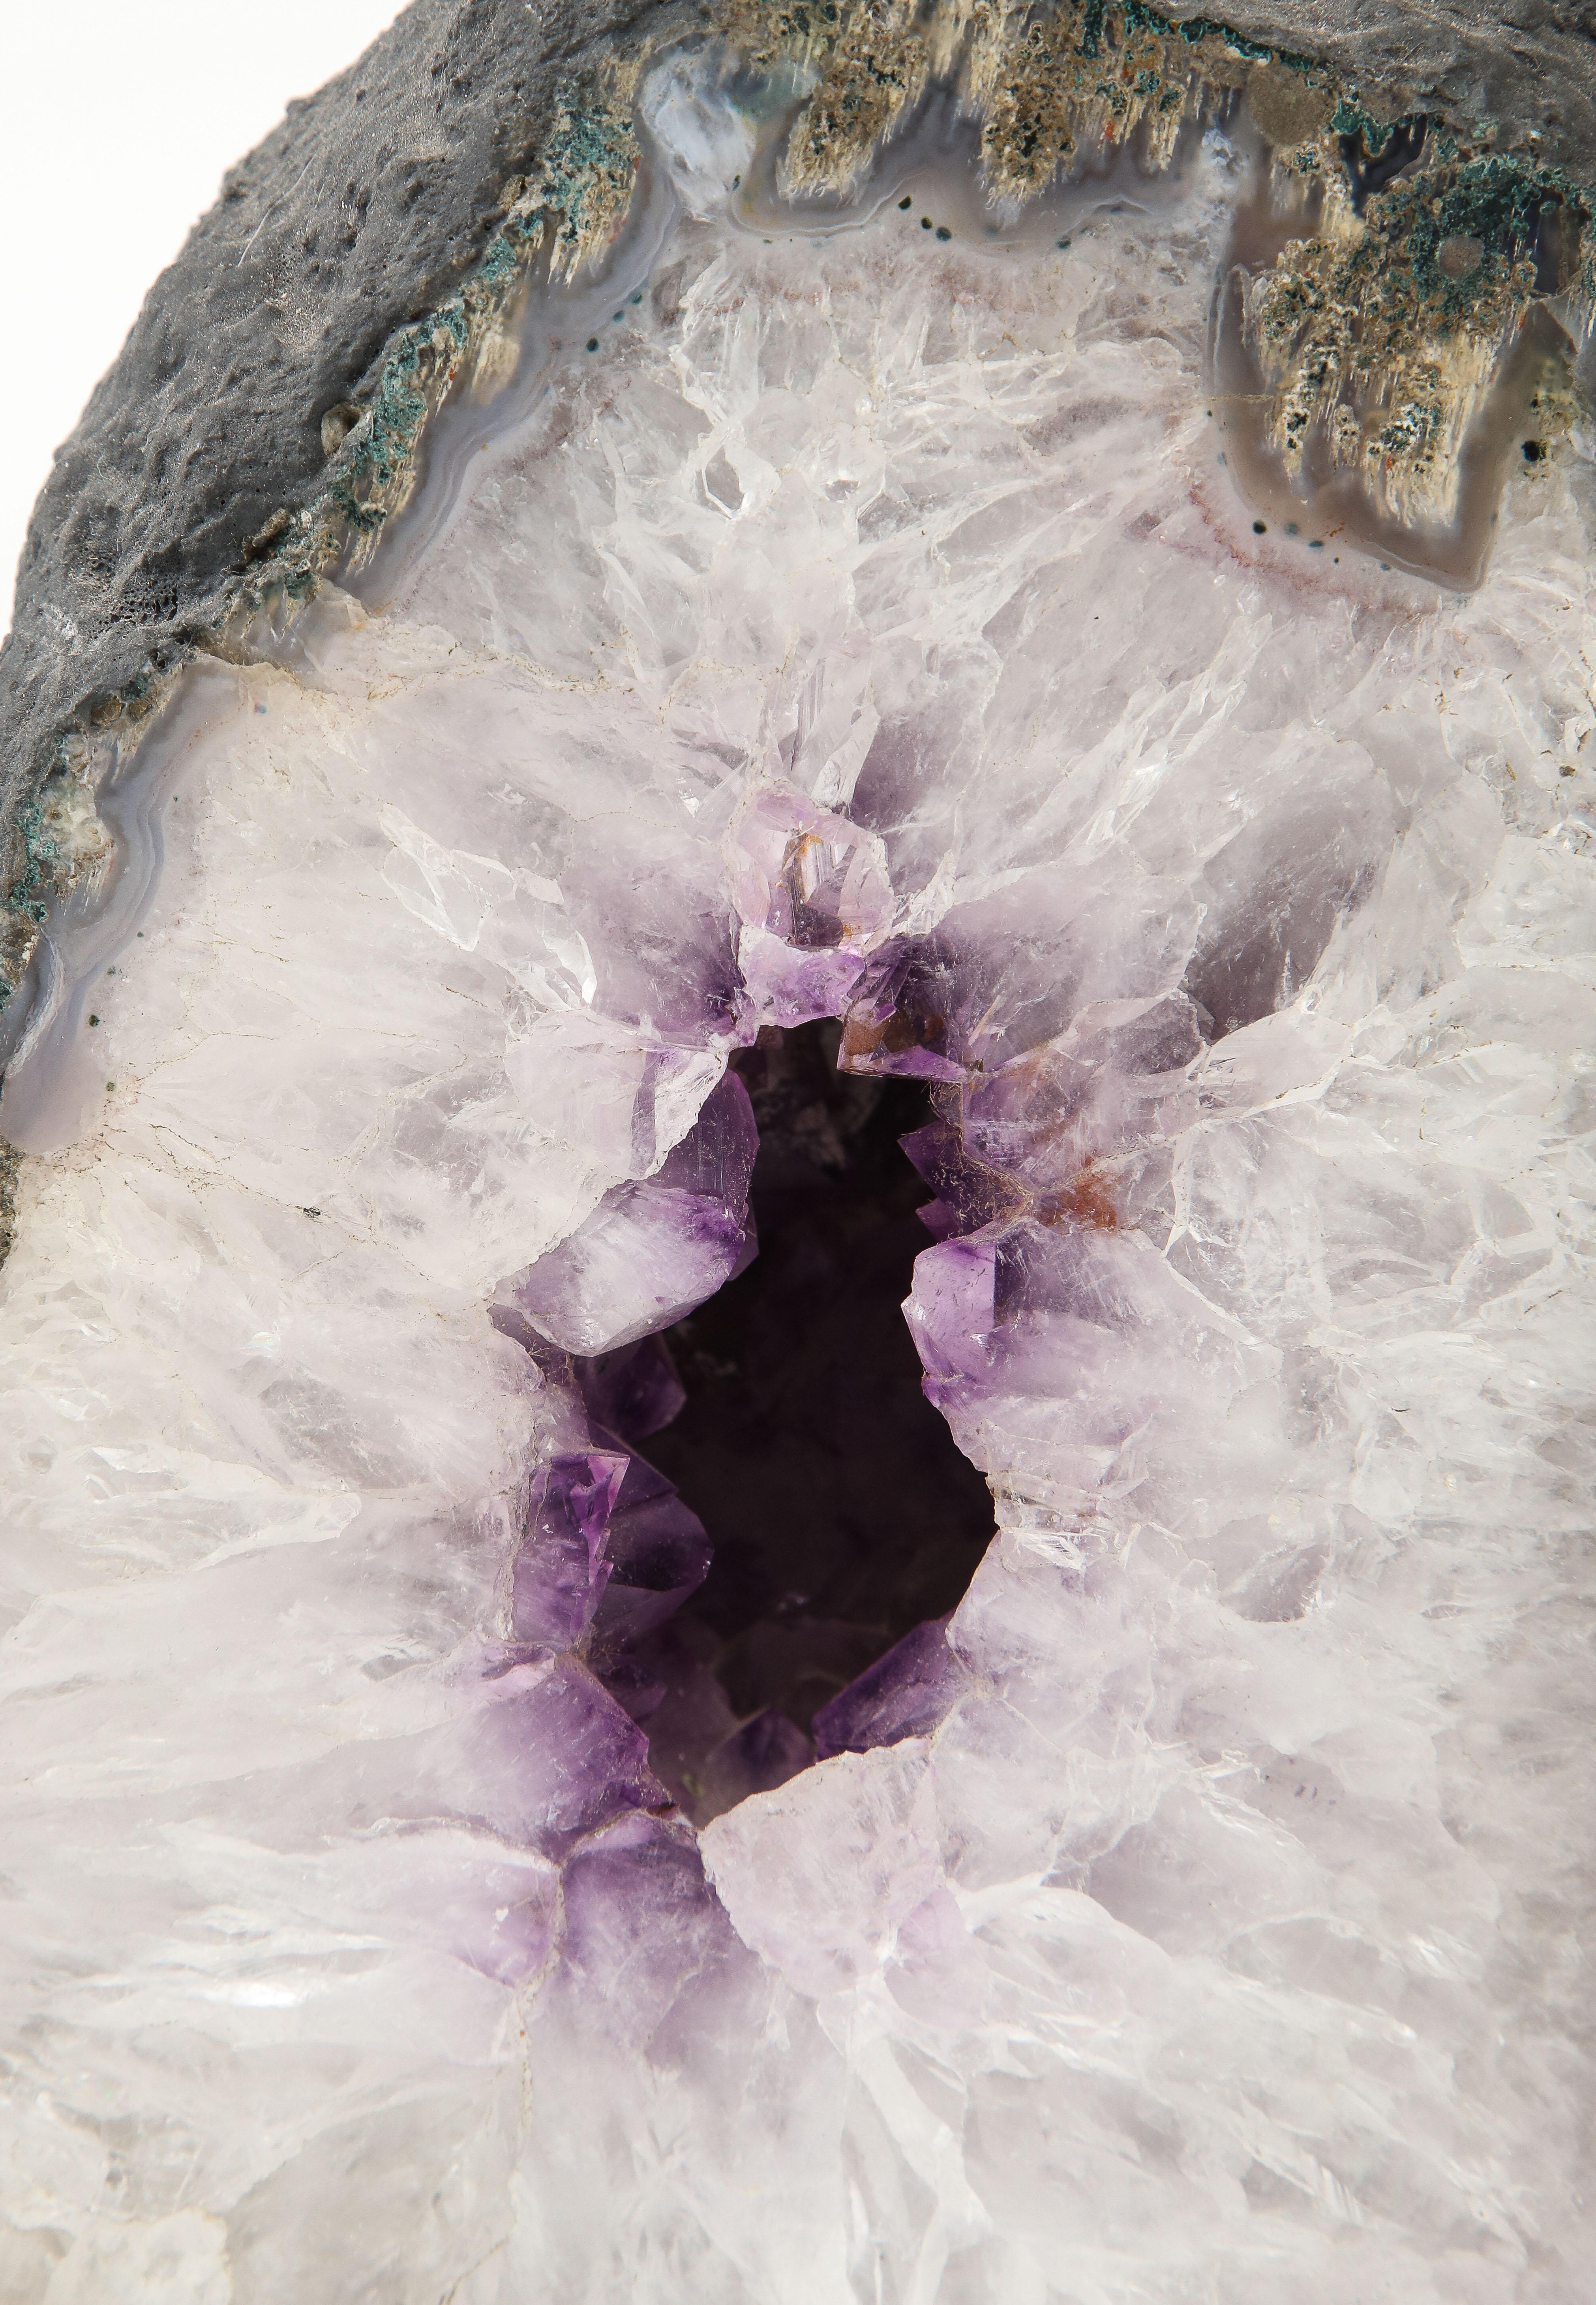 Brazilian Large Crystal, Amethyst Geode Specimen For Sale